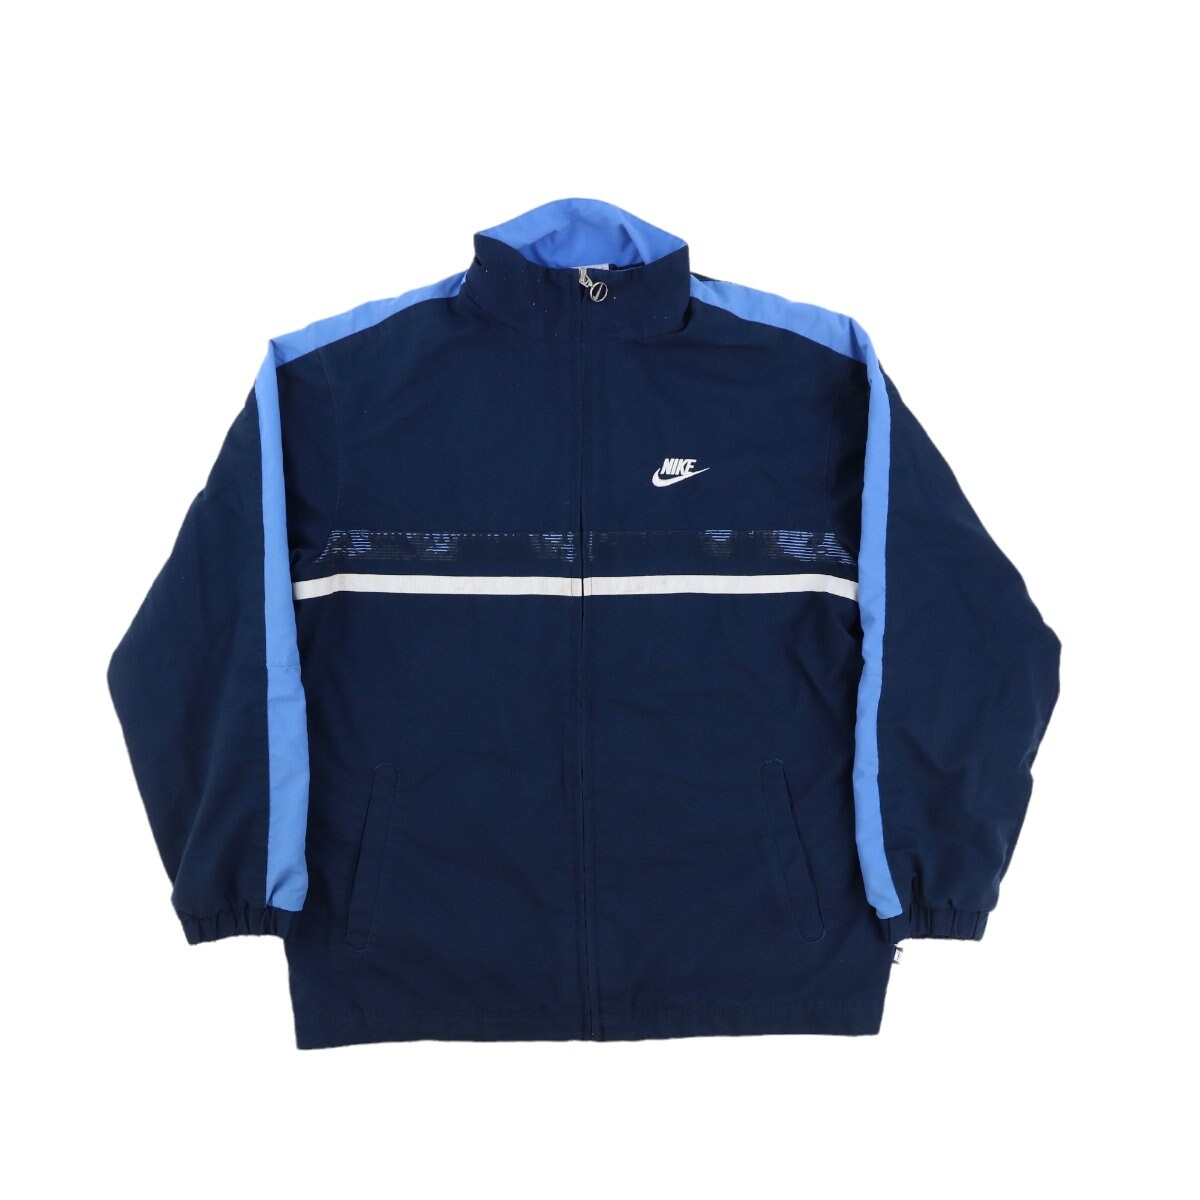 Nike Jacket 90s Track Jacket 90s Windbreaker Vintage Blue Size - Etsy